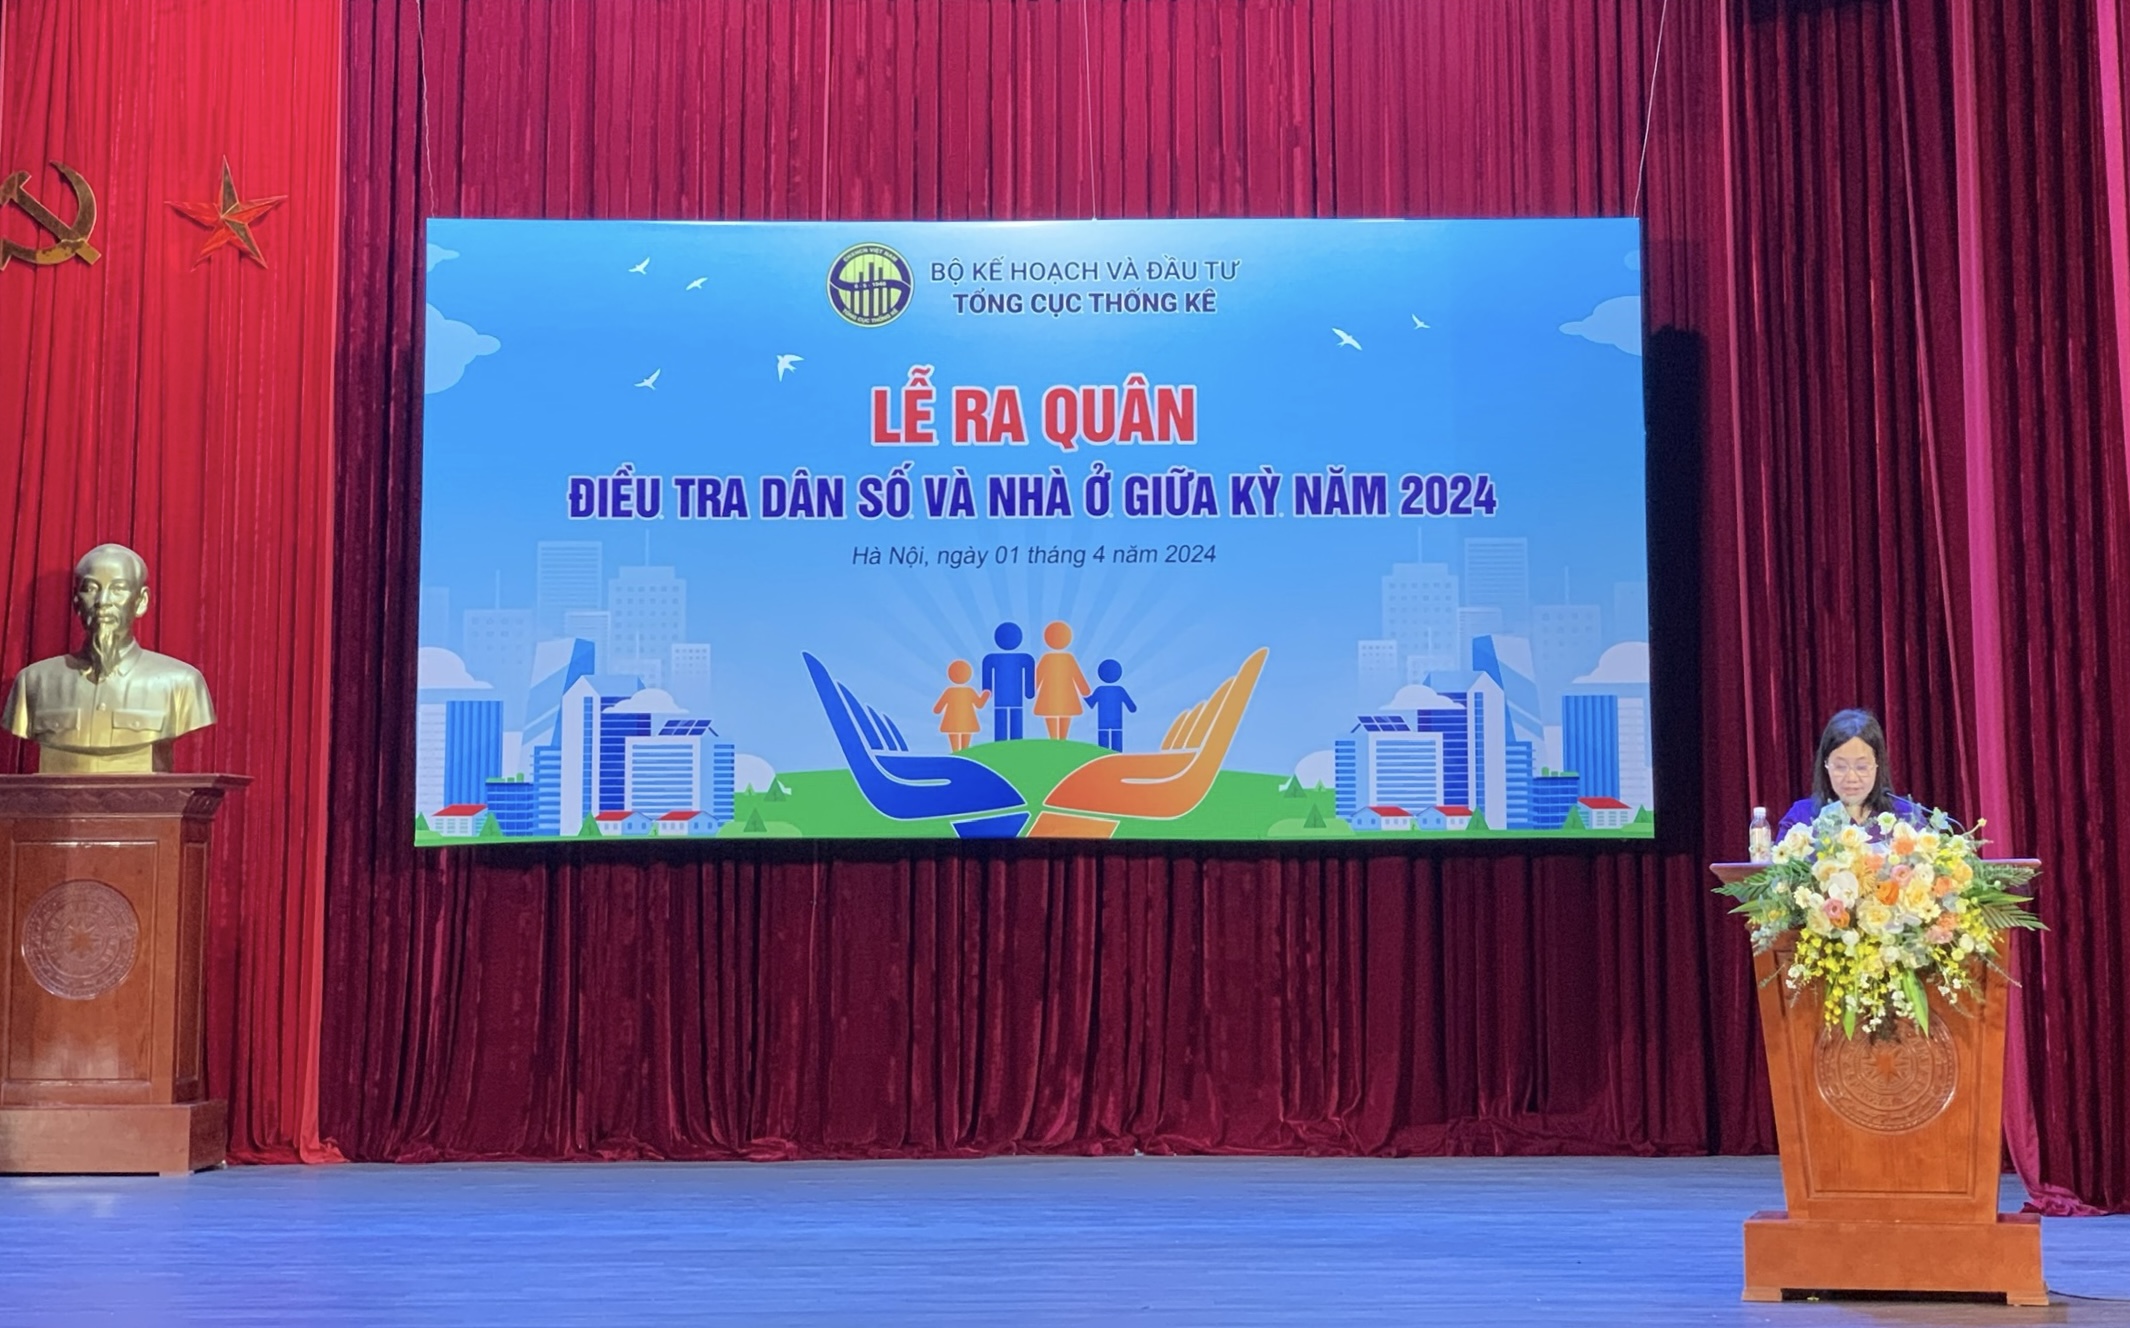 Tổng cục trưởng Tổng cục Thống kê Nguyễn Thị Hương phát biểu tại buổi lễ ra quân điều tra dân số và nhà ở giữa kỳ 2024. Ảnh: Phương Anh 